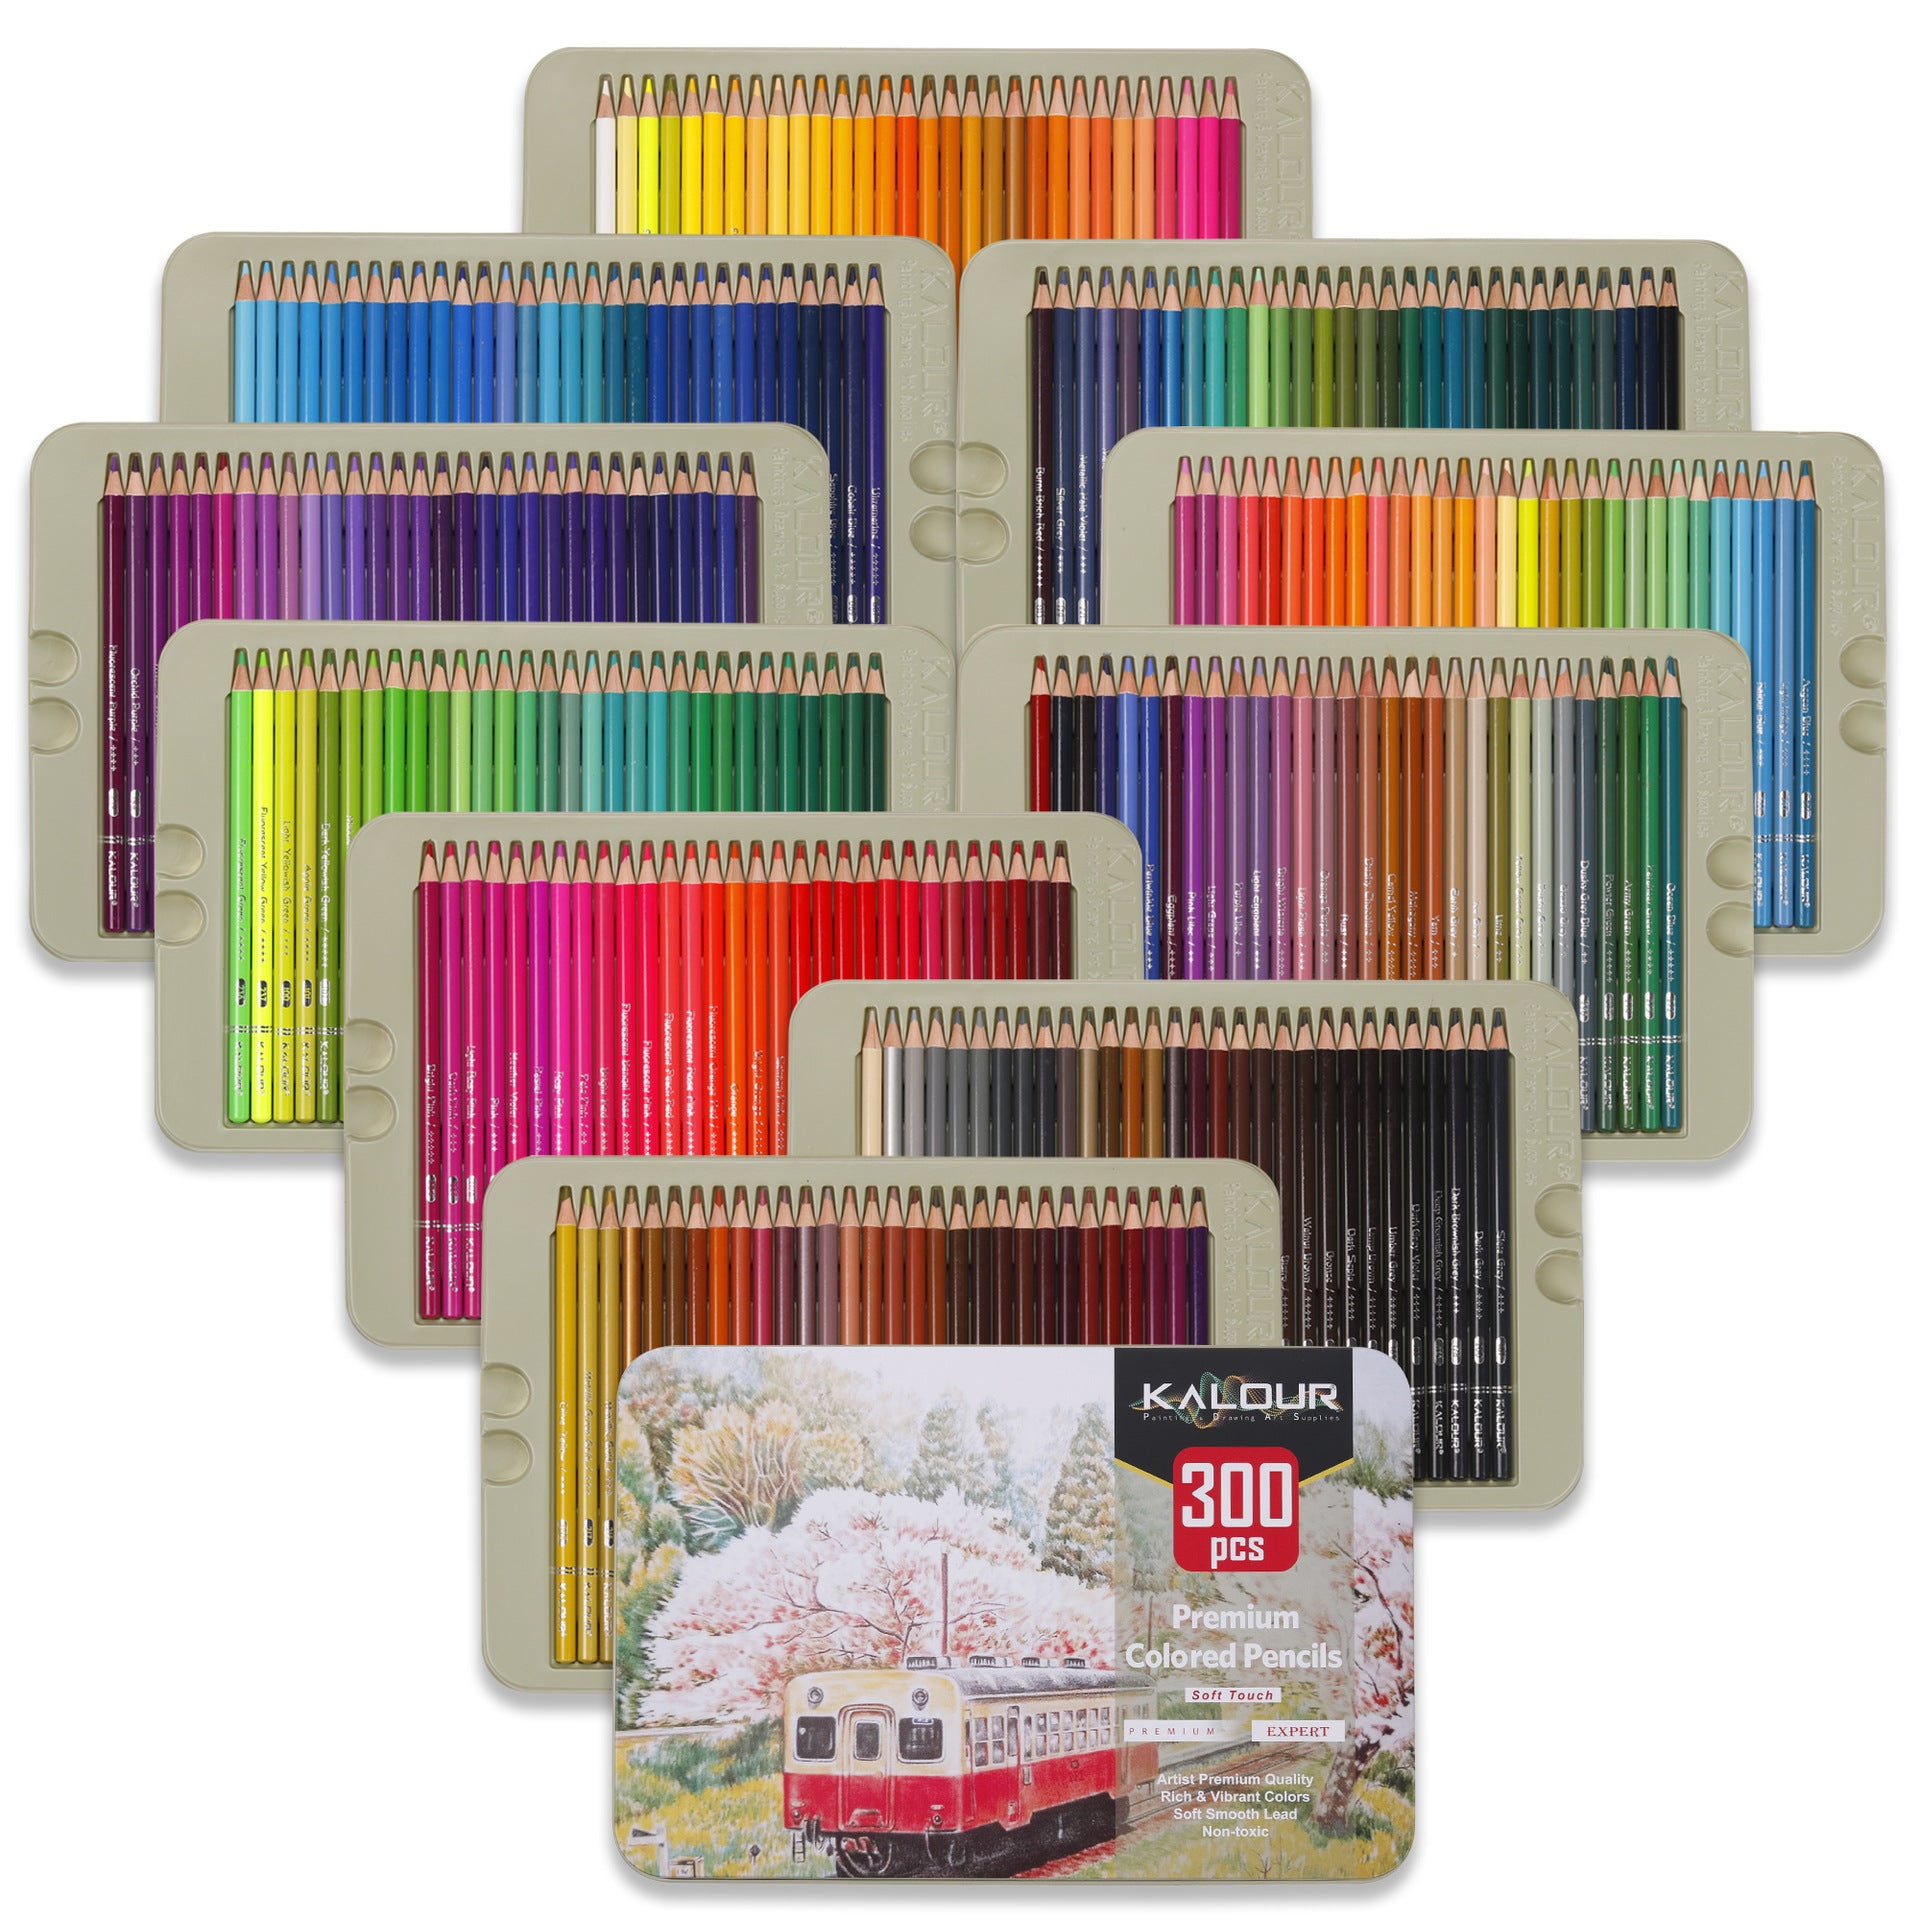 KALOUR Premium Colored Pencils,Set of 72 Colors